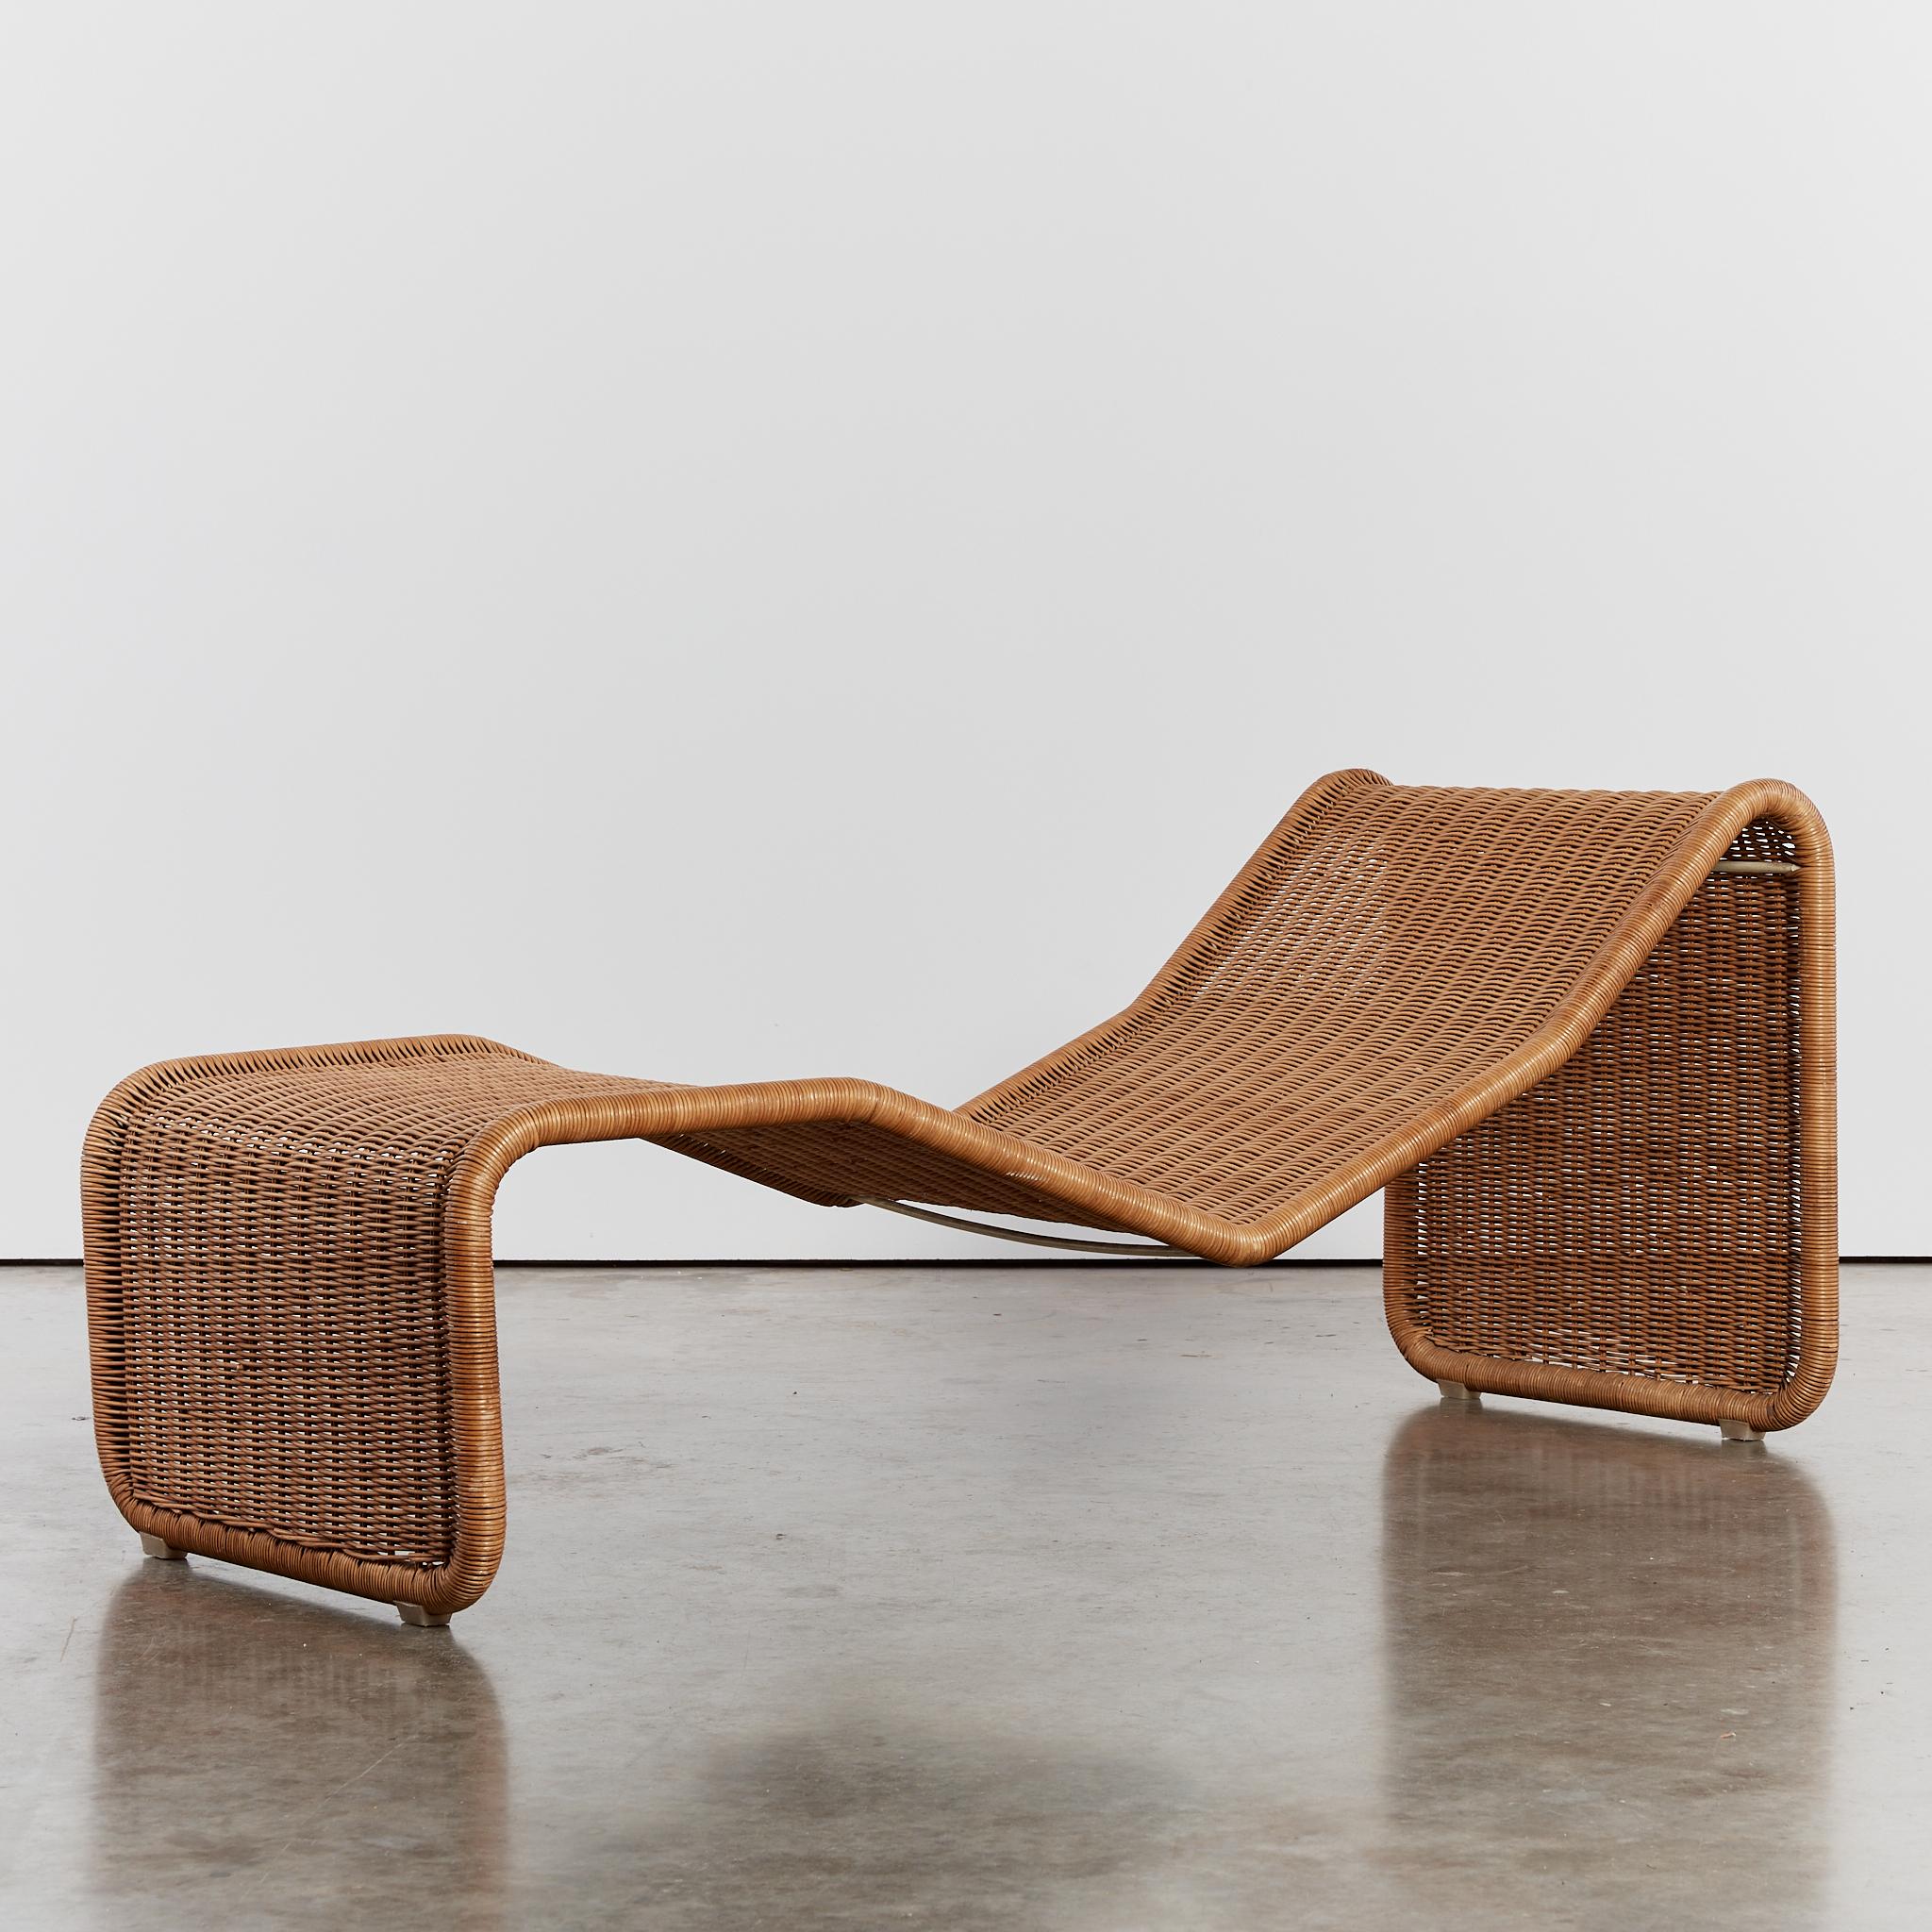 Rare chaise longue en rotin P3 du designer italien Tito Agnoli pour Bonacina. Cette pièce est en excellent état pour son âge, le rotin ayant conservé ses teintes chaudes et ne présentant aucune cassure.

Designer : Tito Agnoli

Modèle : P3

Année :